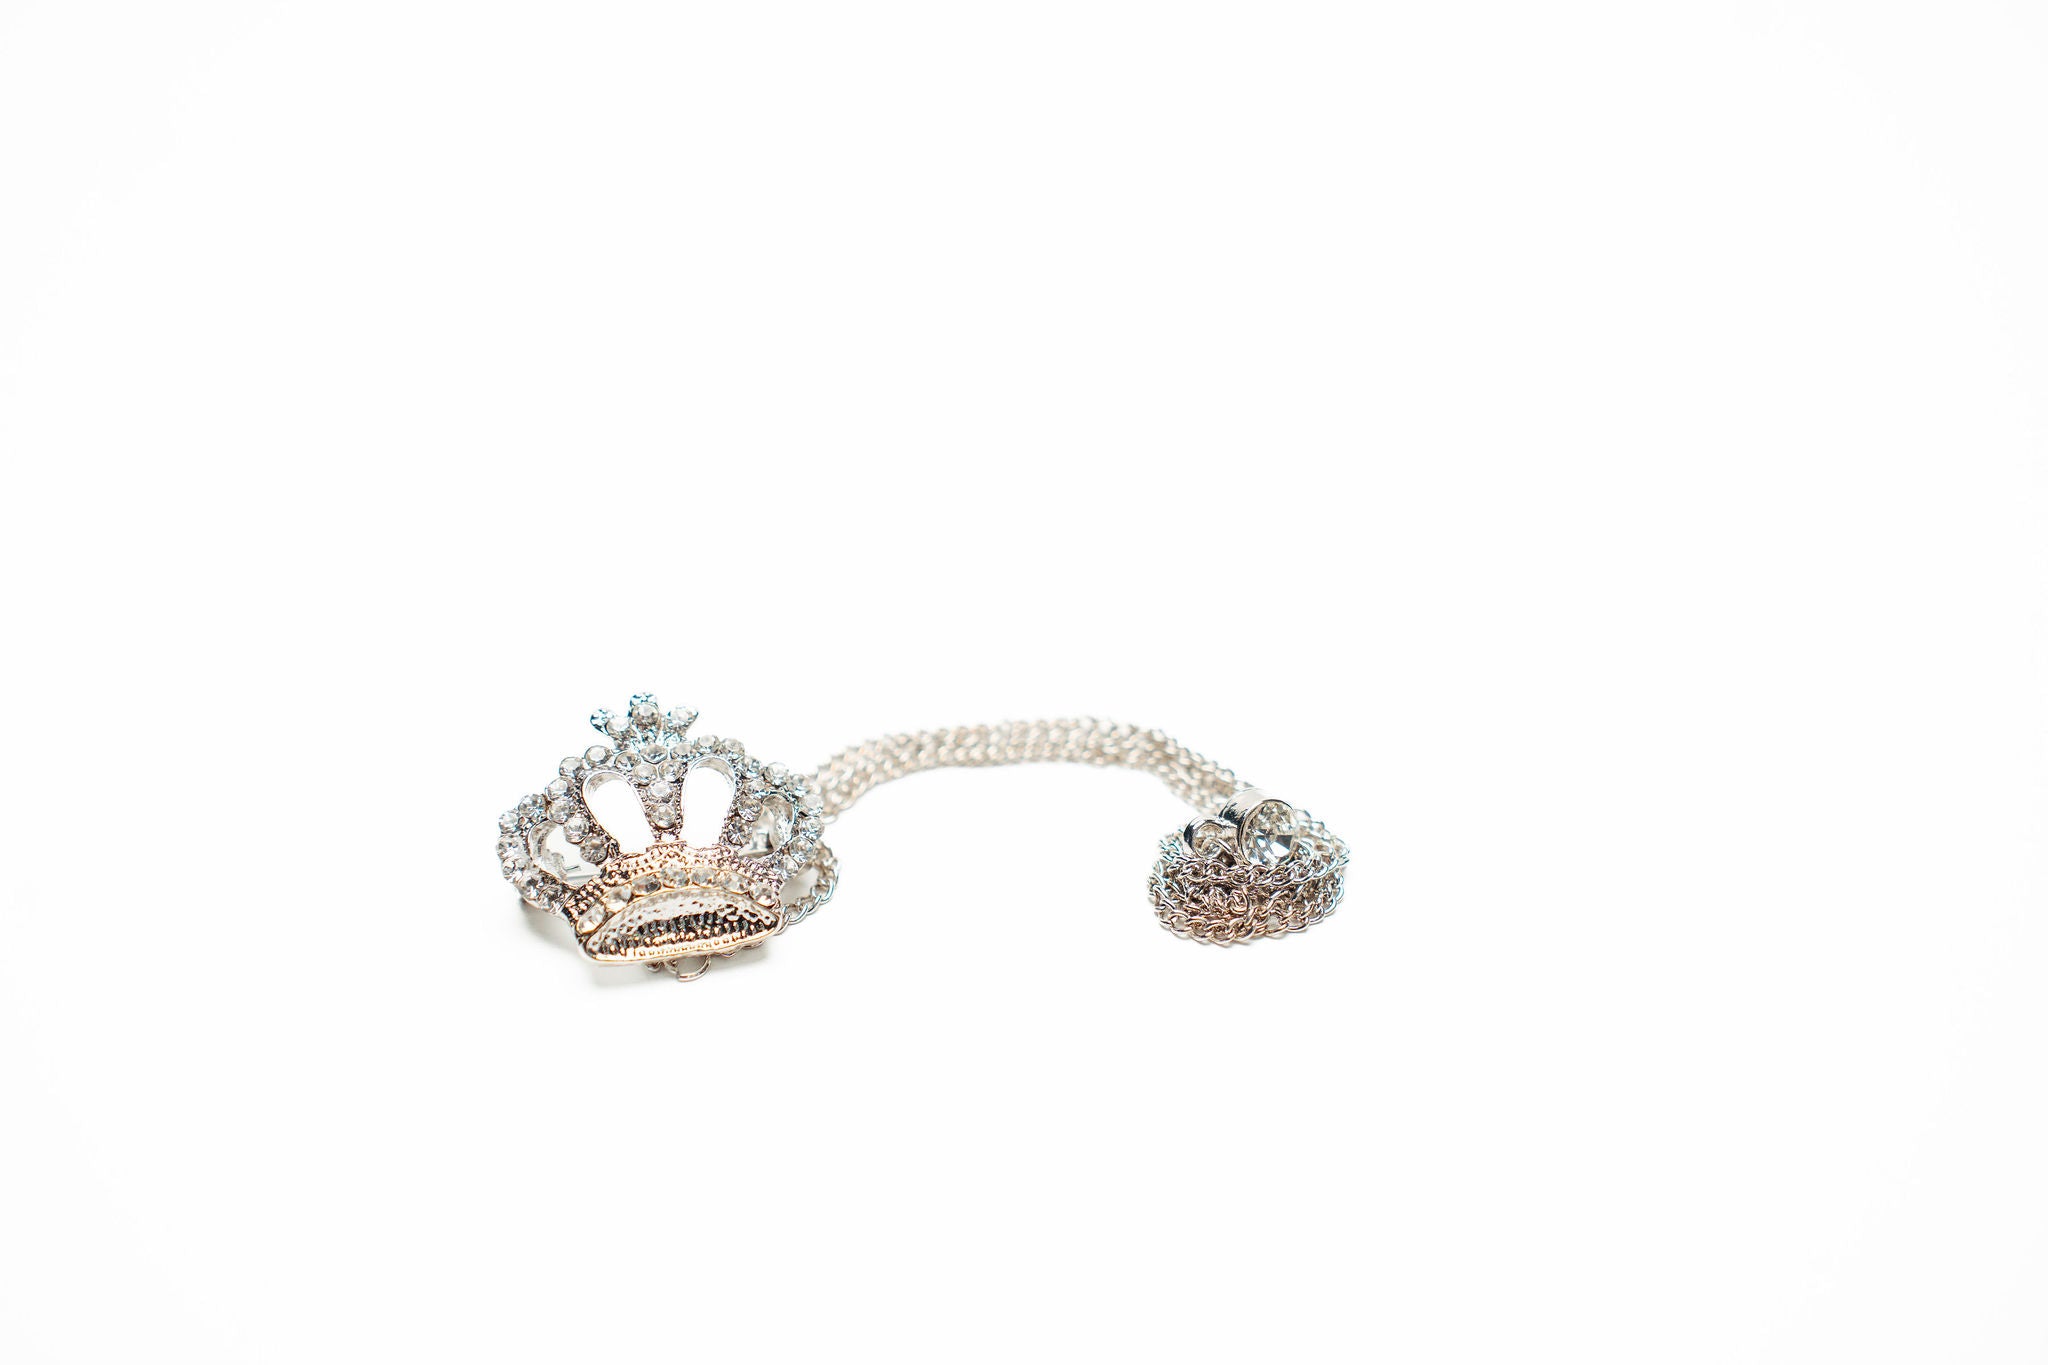 Silver Crown Brooche (Lapel Chain)